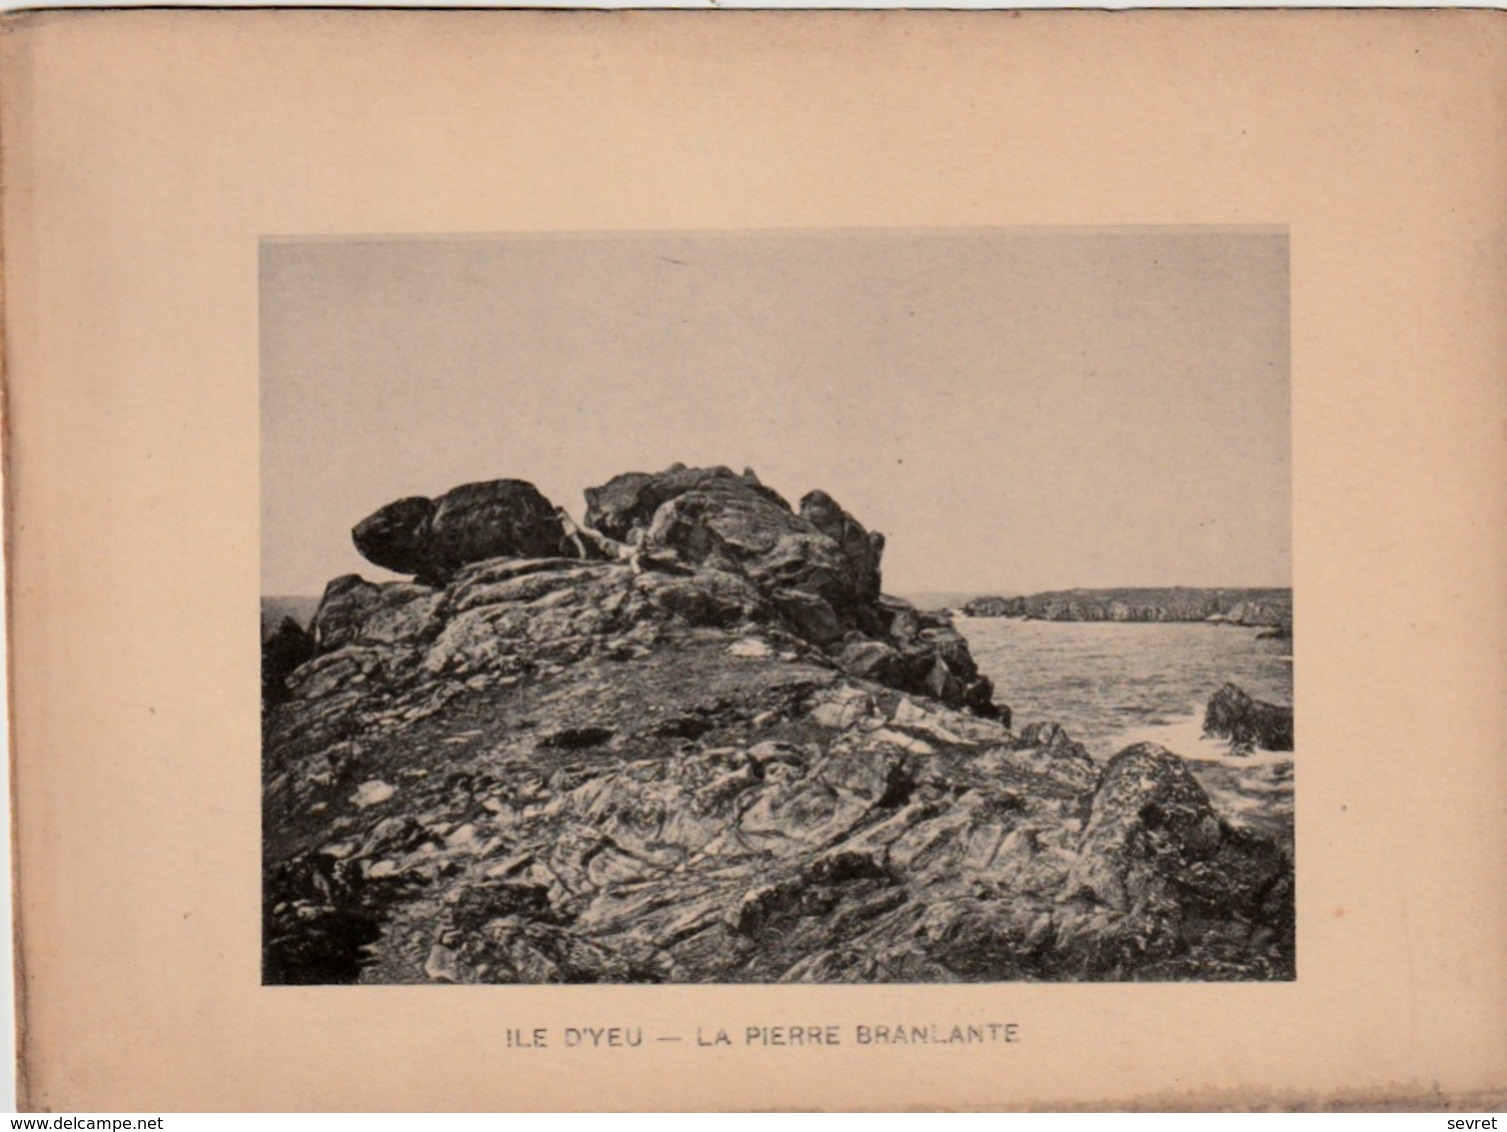 VENDEE - ILE D'YEU - La Pierre Branlante - Photogravure  Document Jules Robuchon Fin 19 ème  Format 14x18 - Anciennes (Av. 1900)